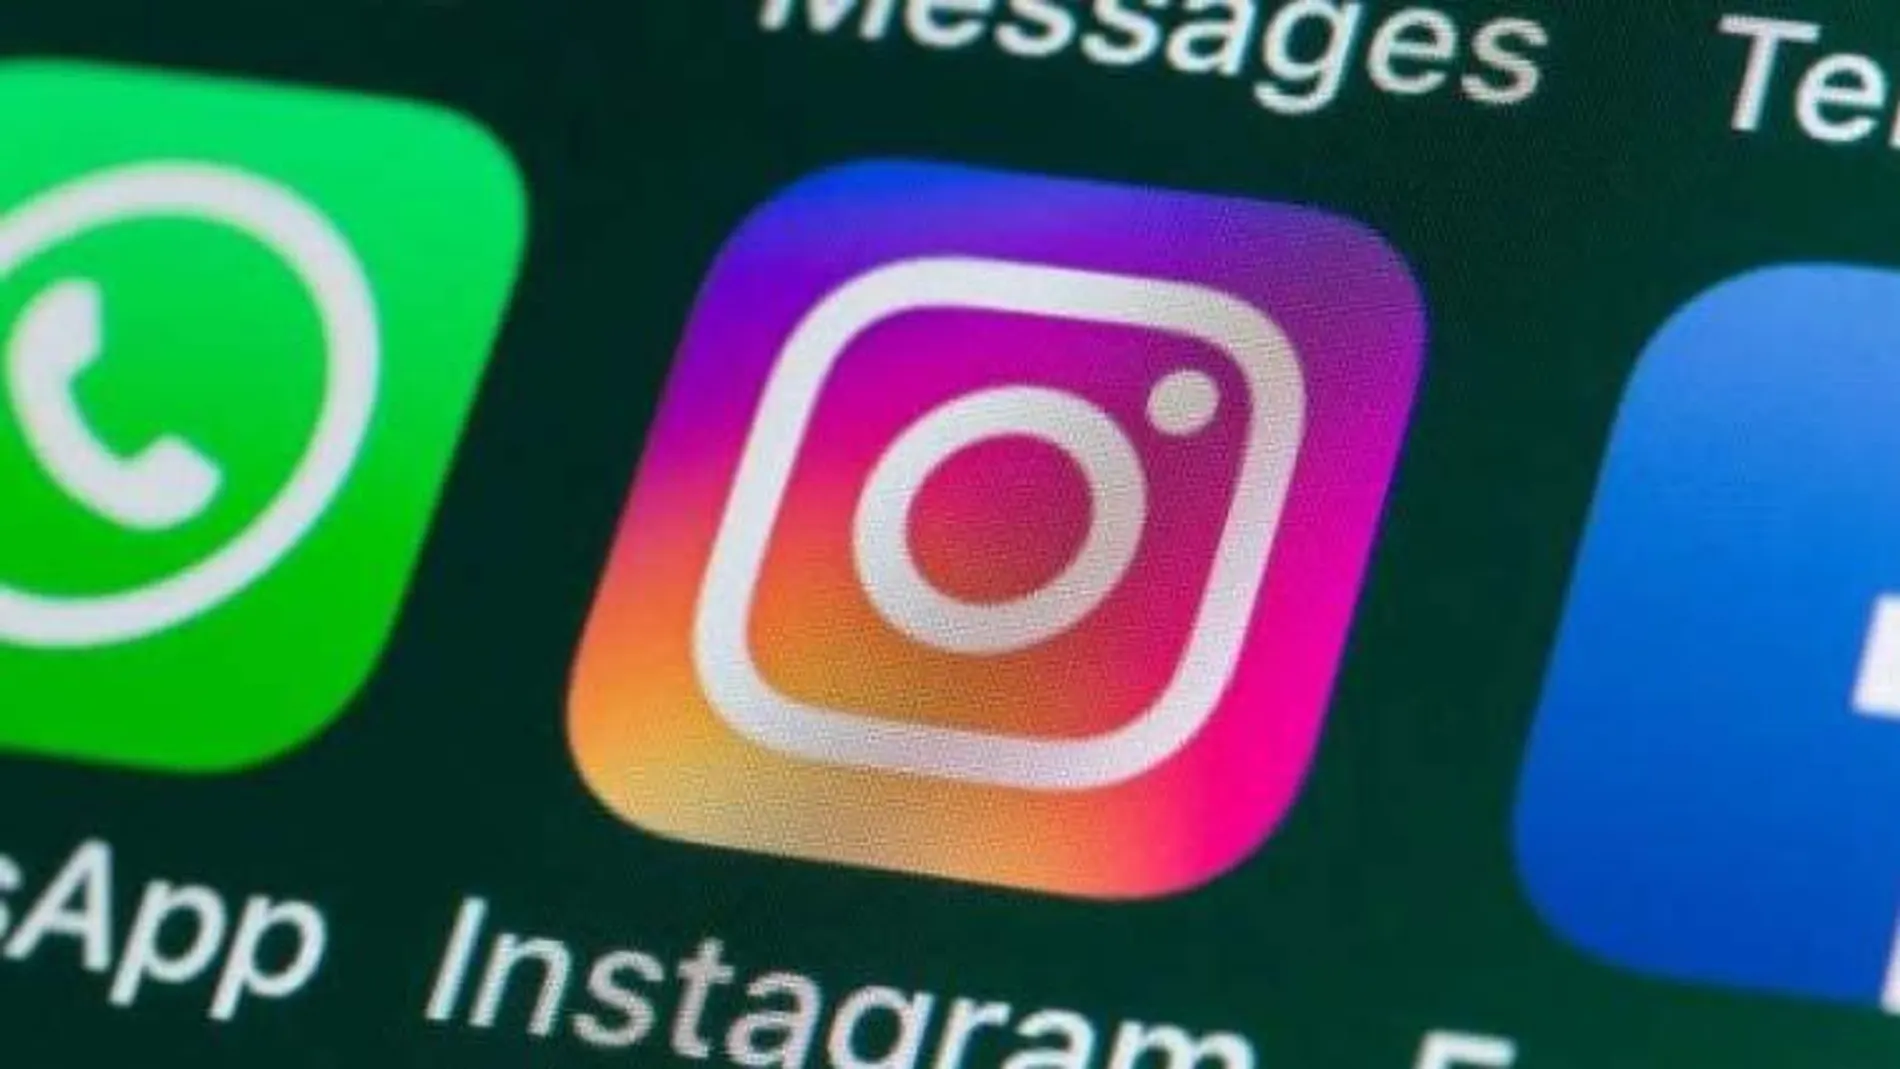 Para luchar contra las informaciones falsas en la red, Instagram permite a los usuarios de Estados Unidos denunciar estos contenidos.